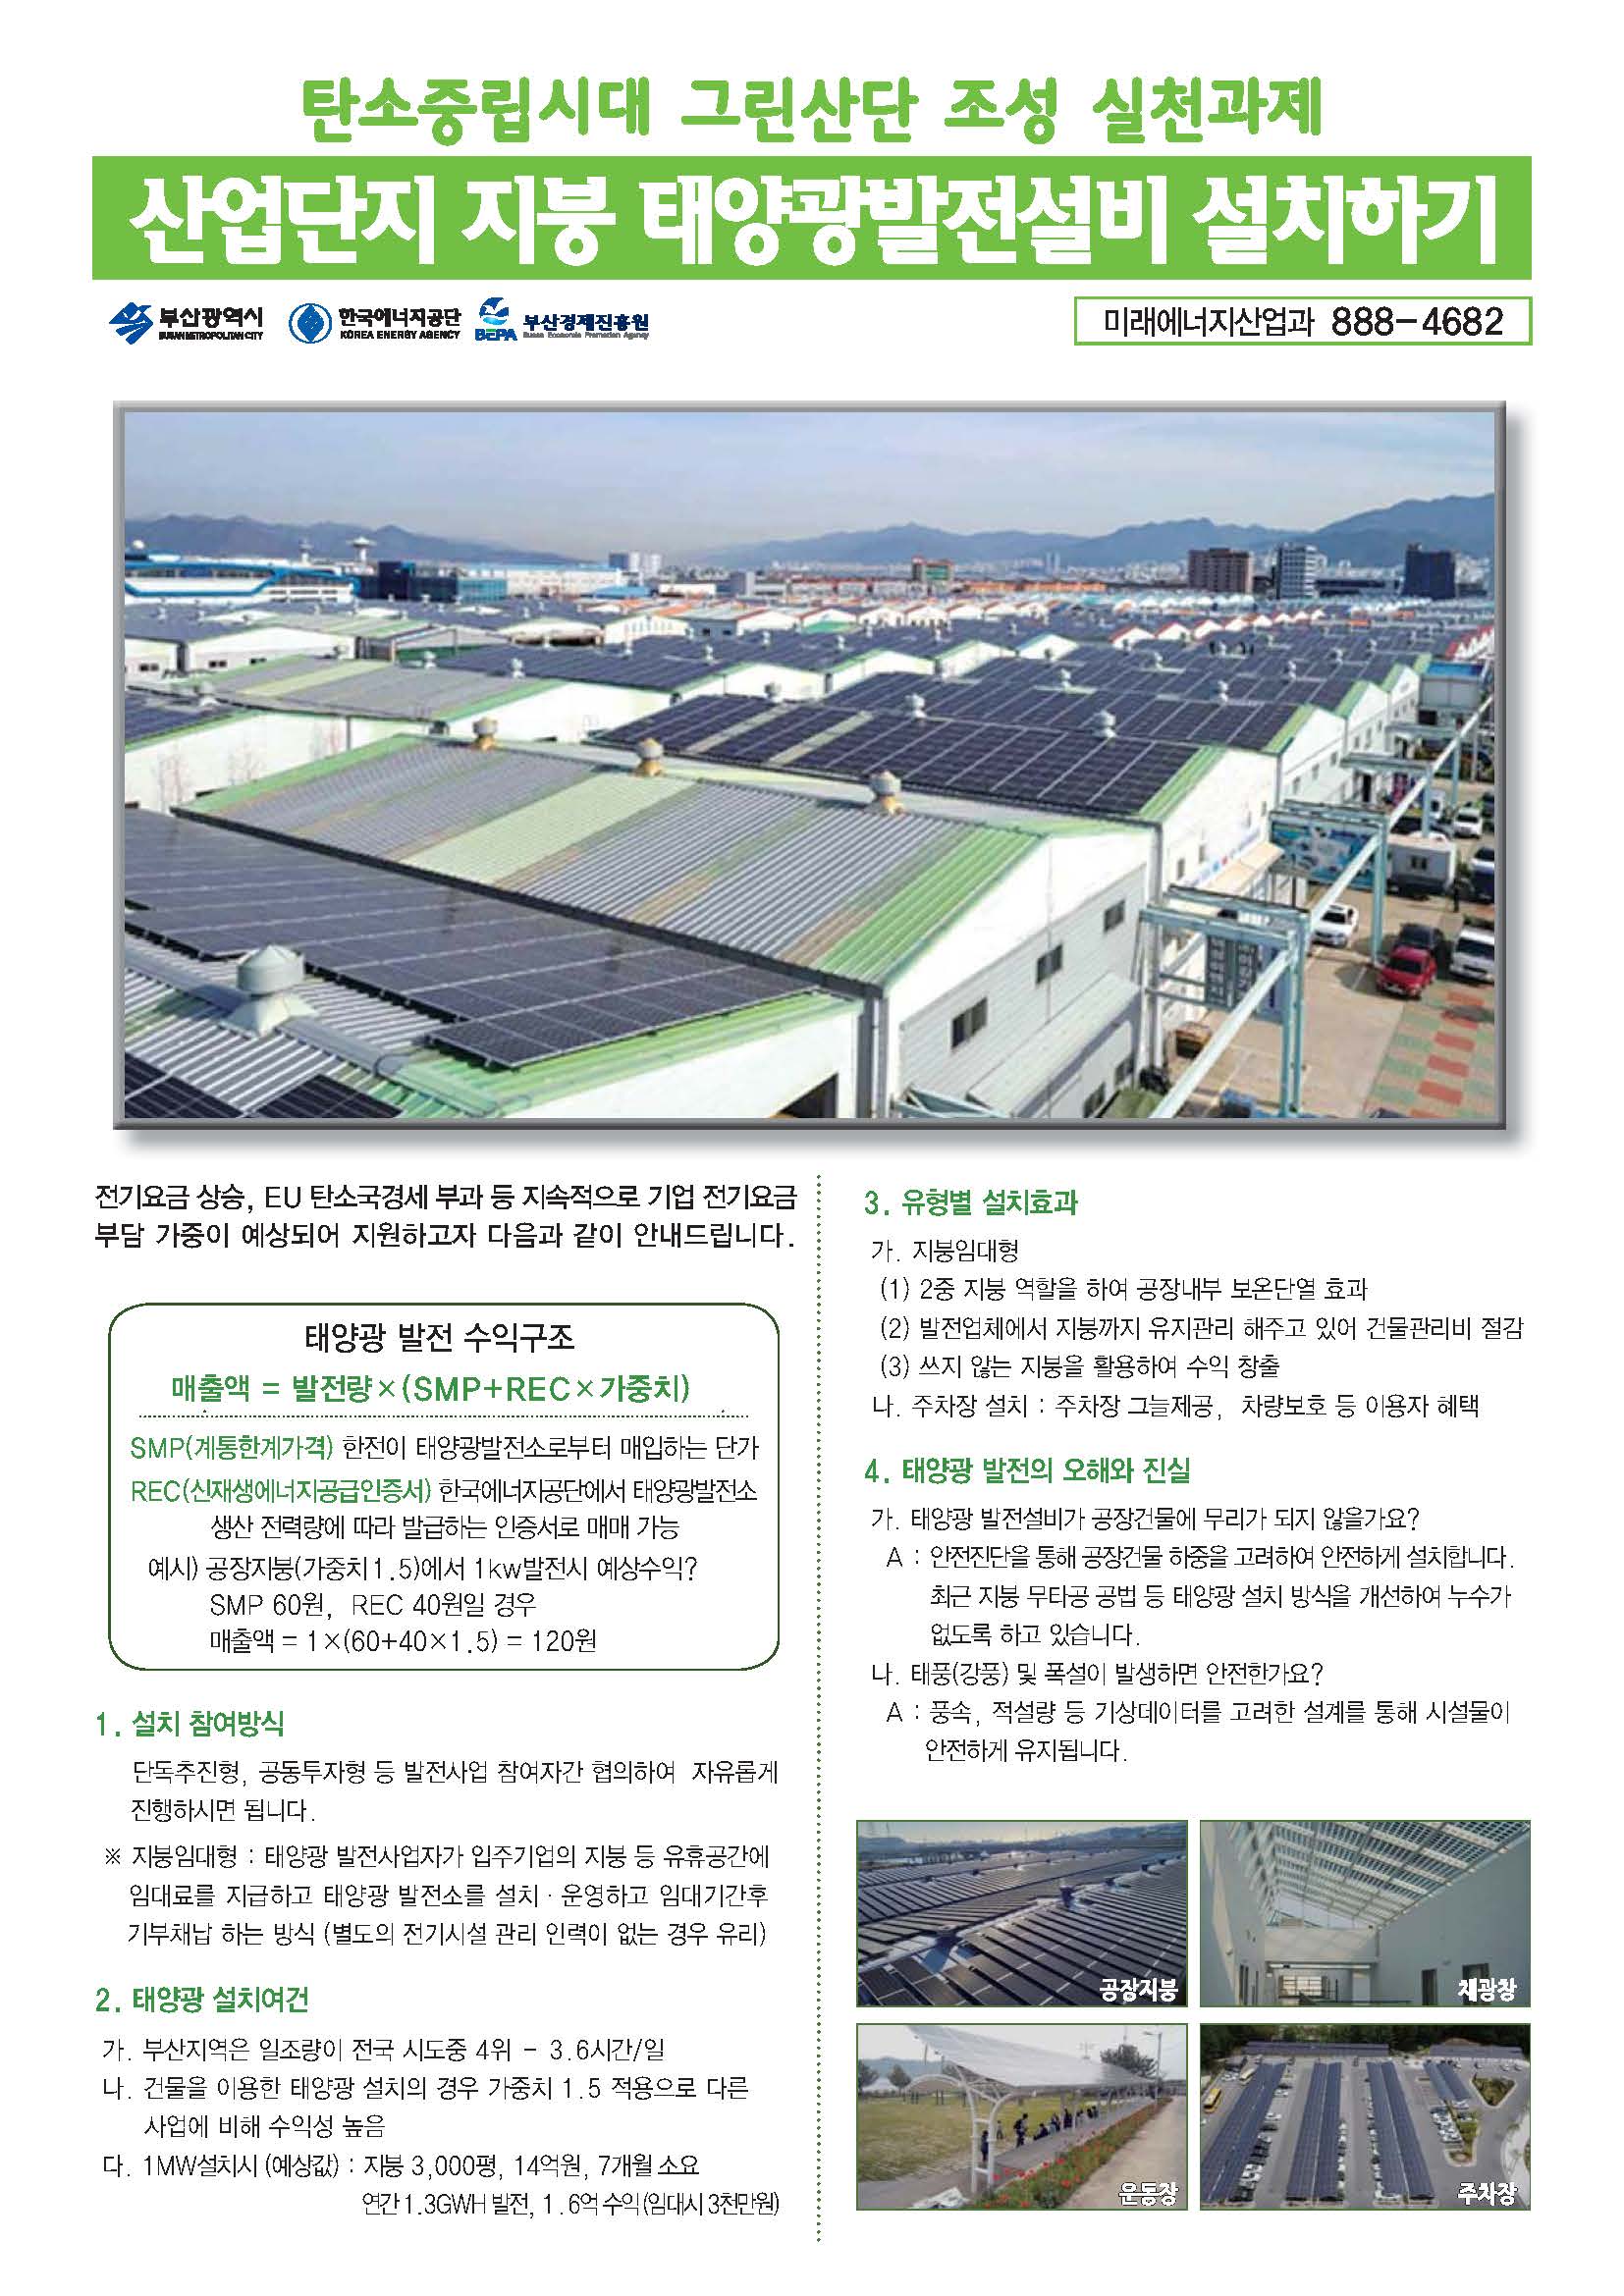 산업단지 지붕 태양광발전설비 설치 지원 안내